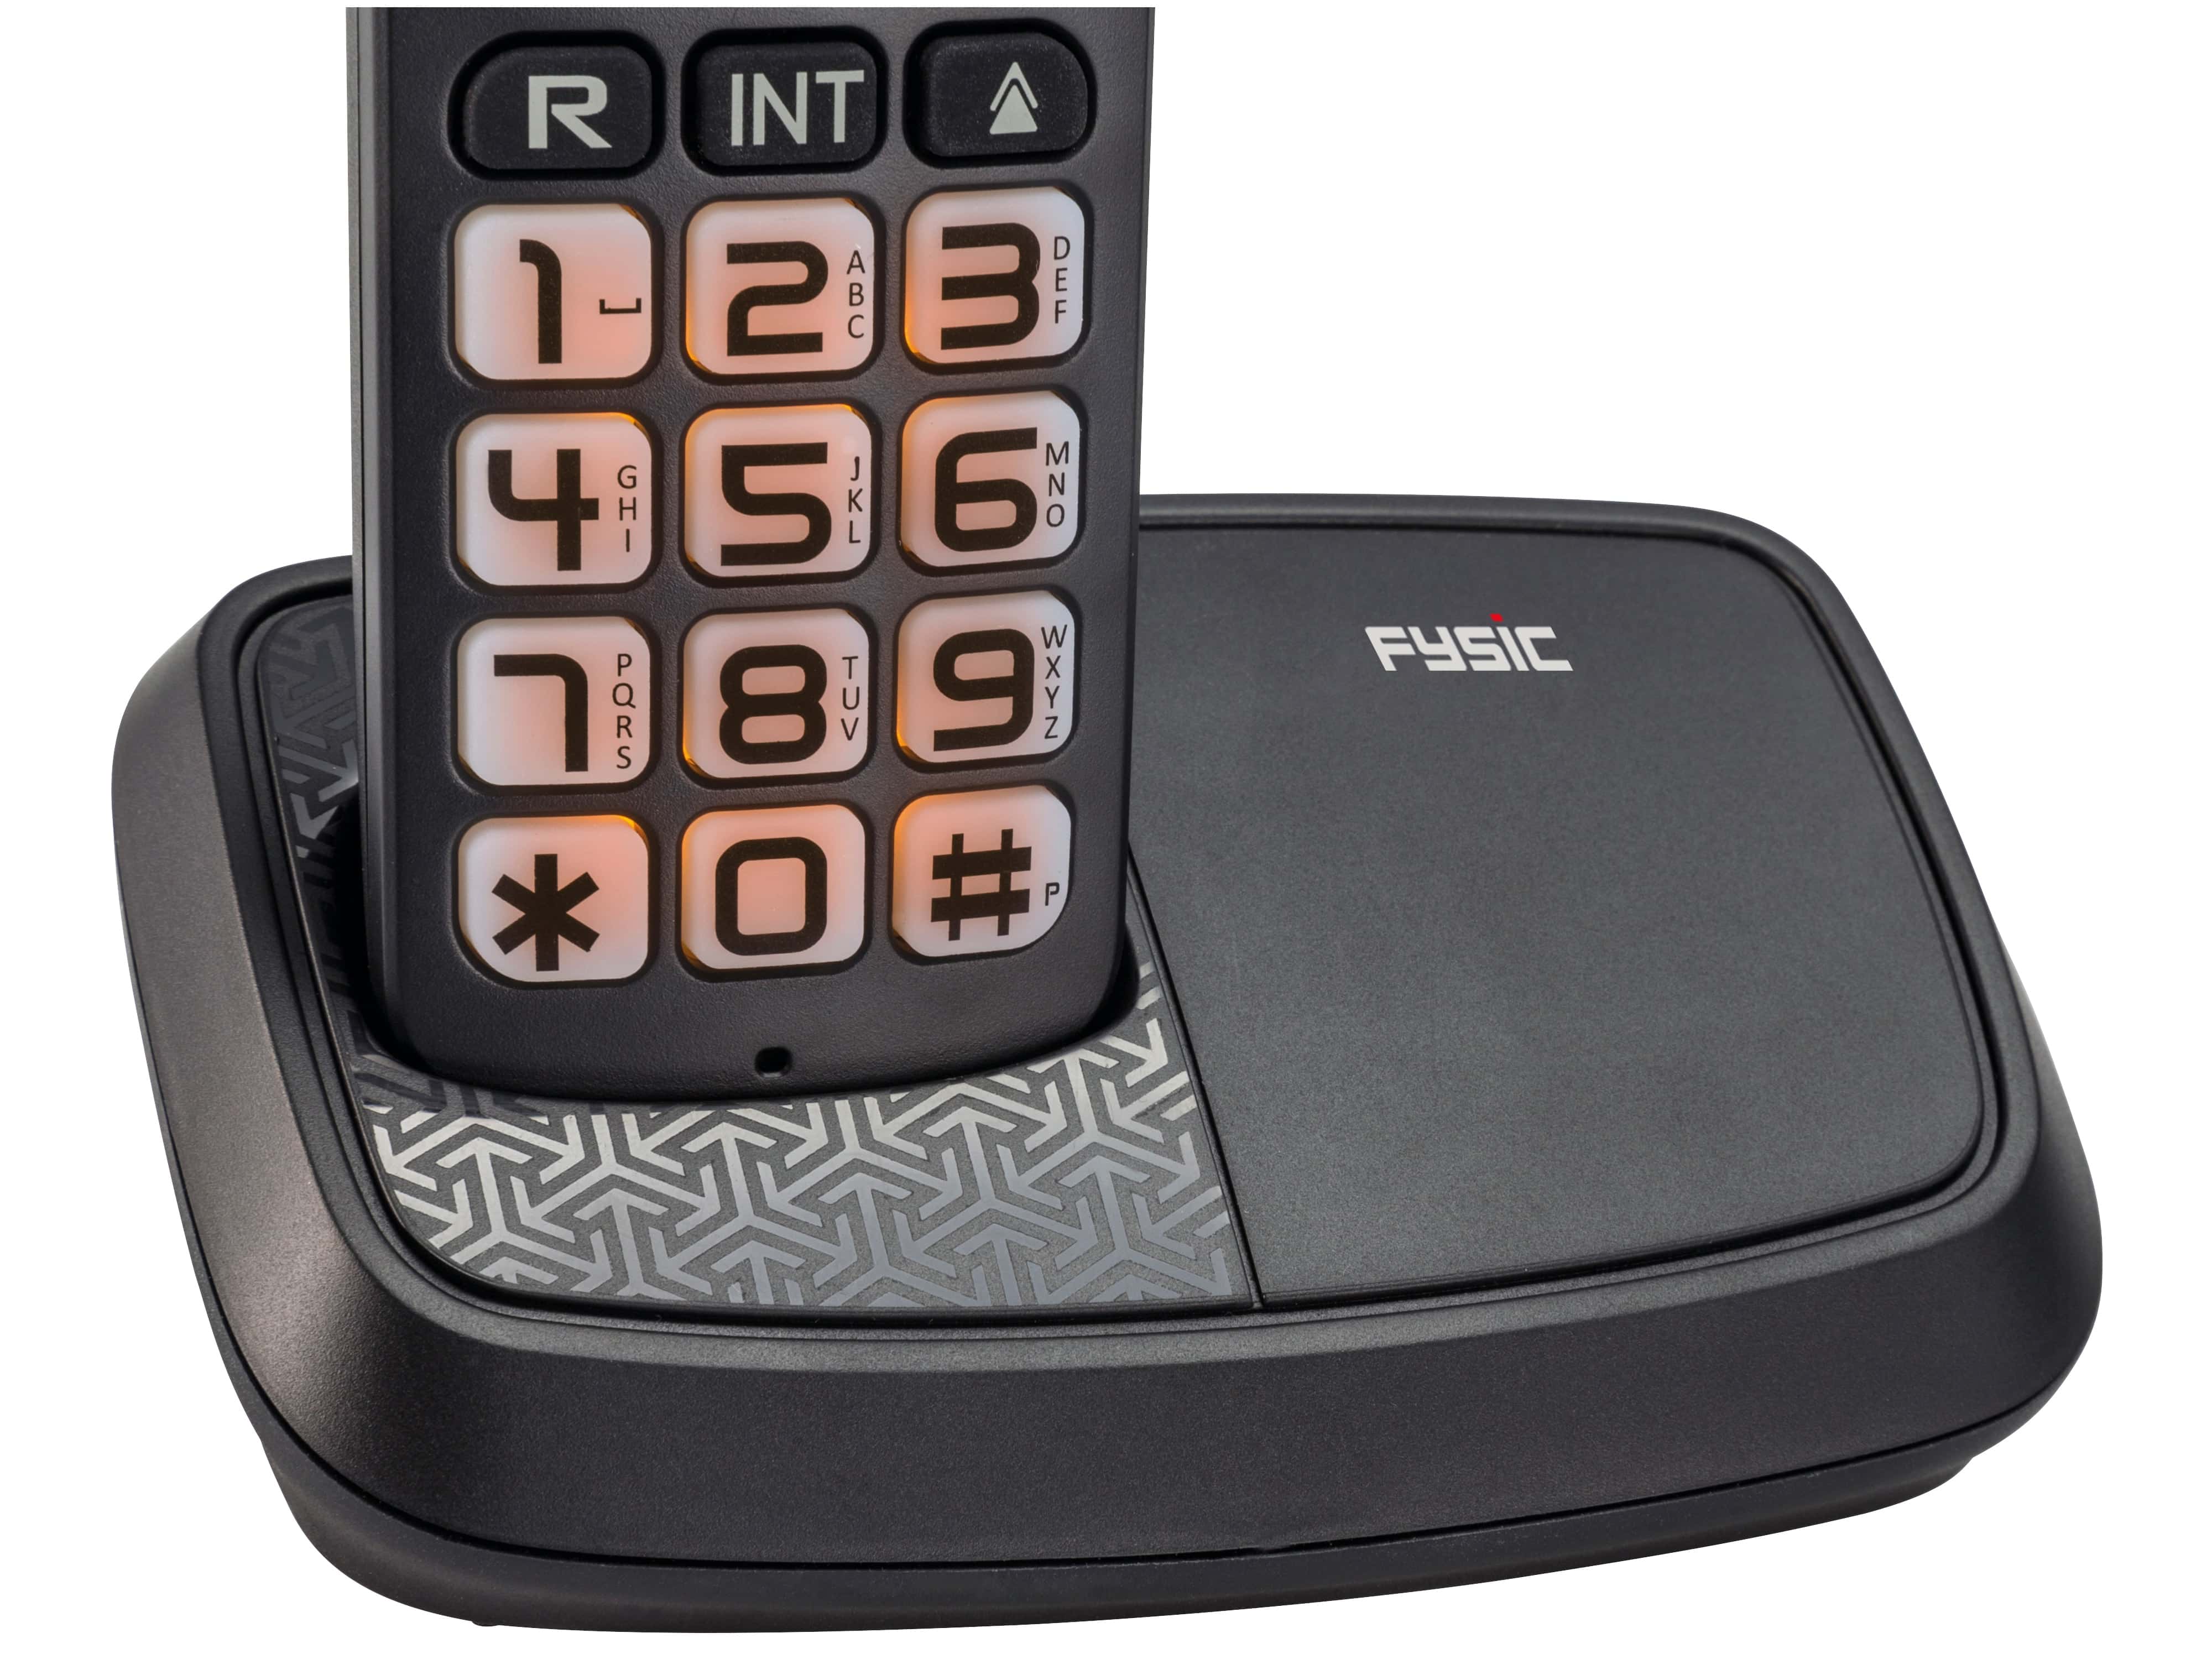 FYSIC DECT-Telefon FX-5500, mit großen Tasten, schwarz